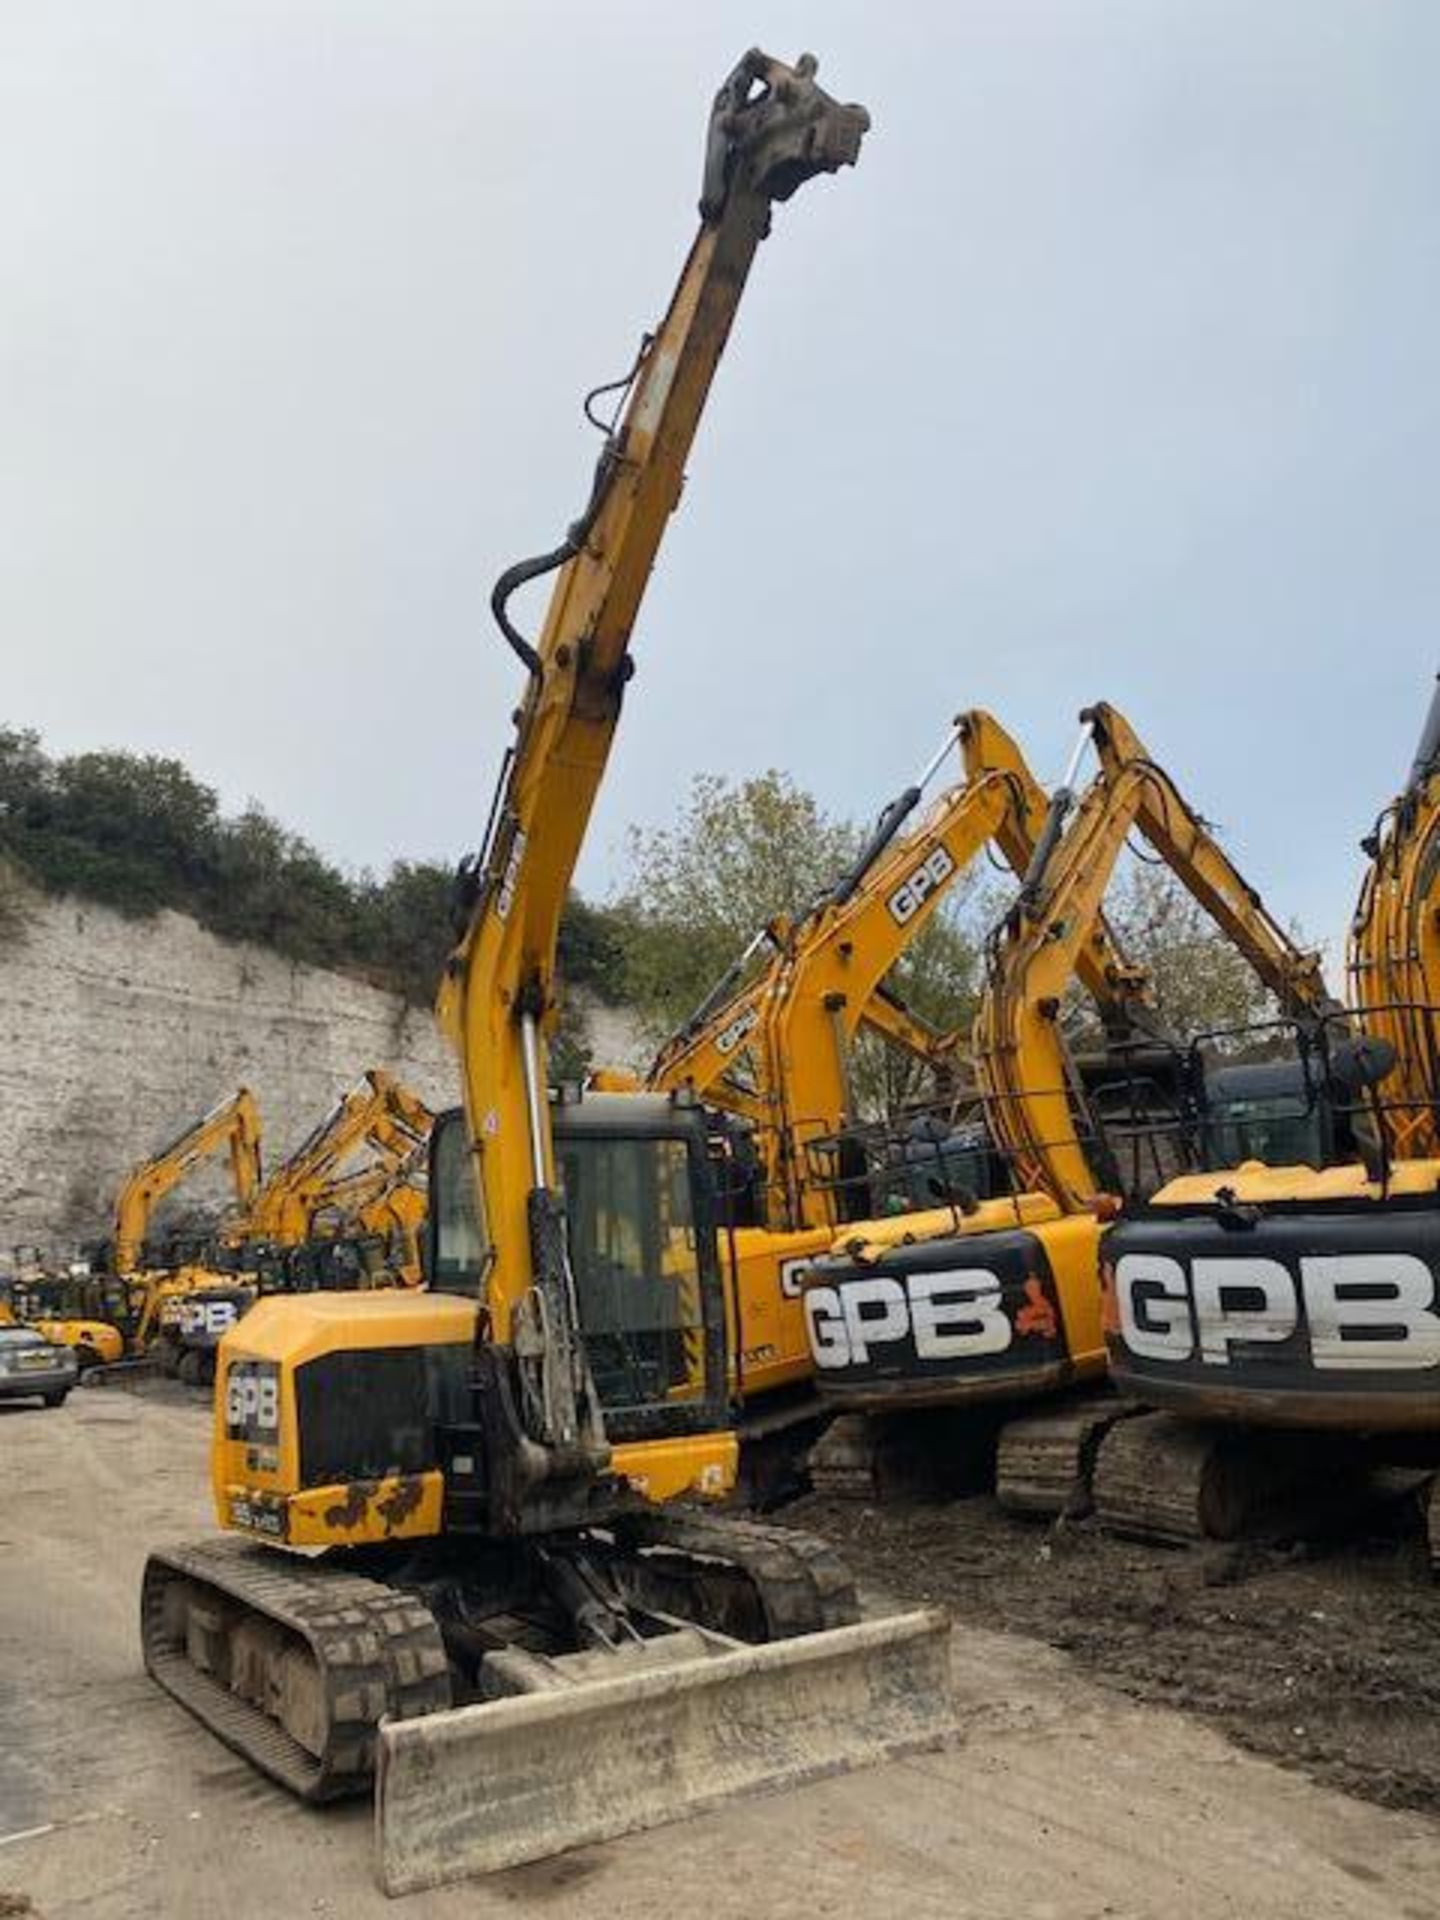 JCB JCB85Z1 8 ton excavator (E15) (2015) - Image 2 of 17